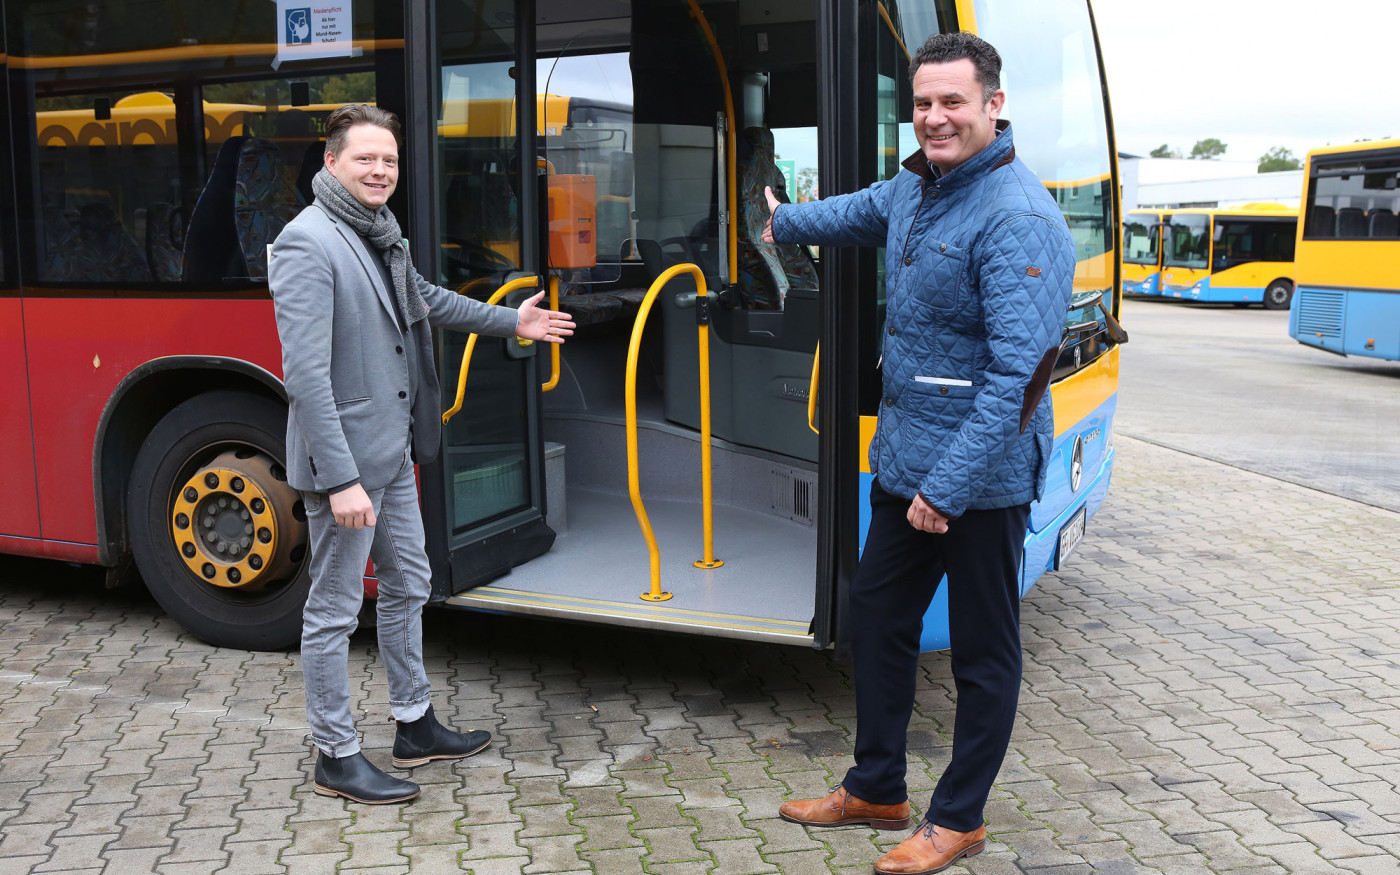 Kostenfreies Busfahren in Gifhorn - Ab sofort an jedem Samstag bis zum Ende des Jahres